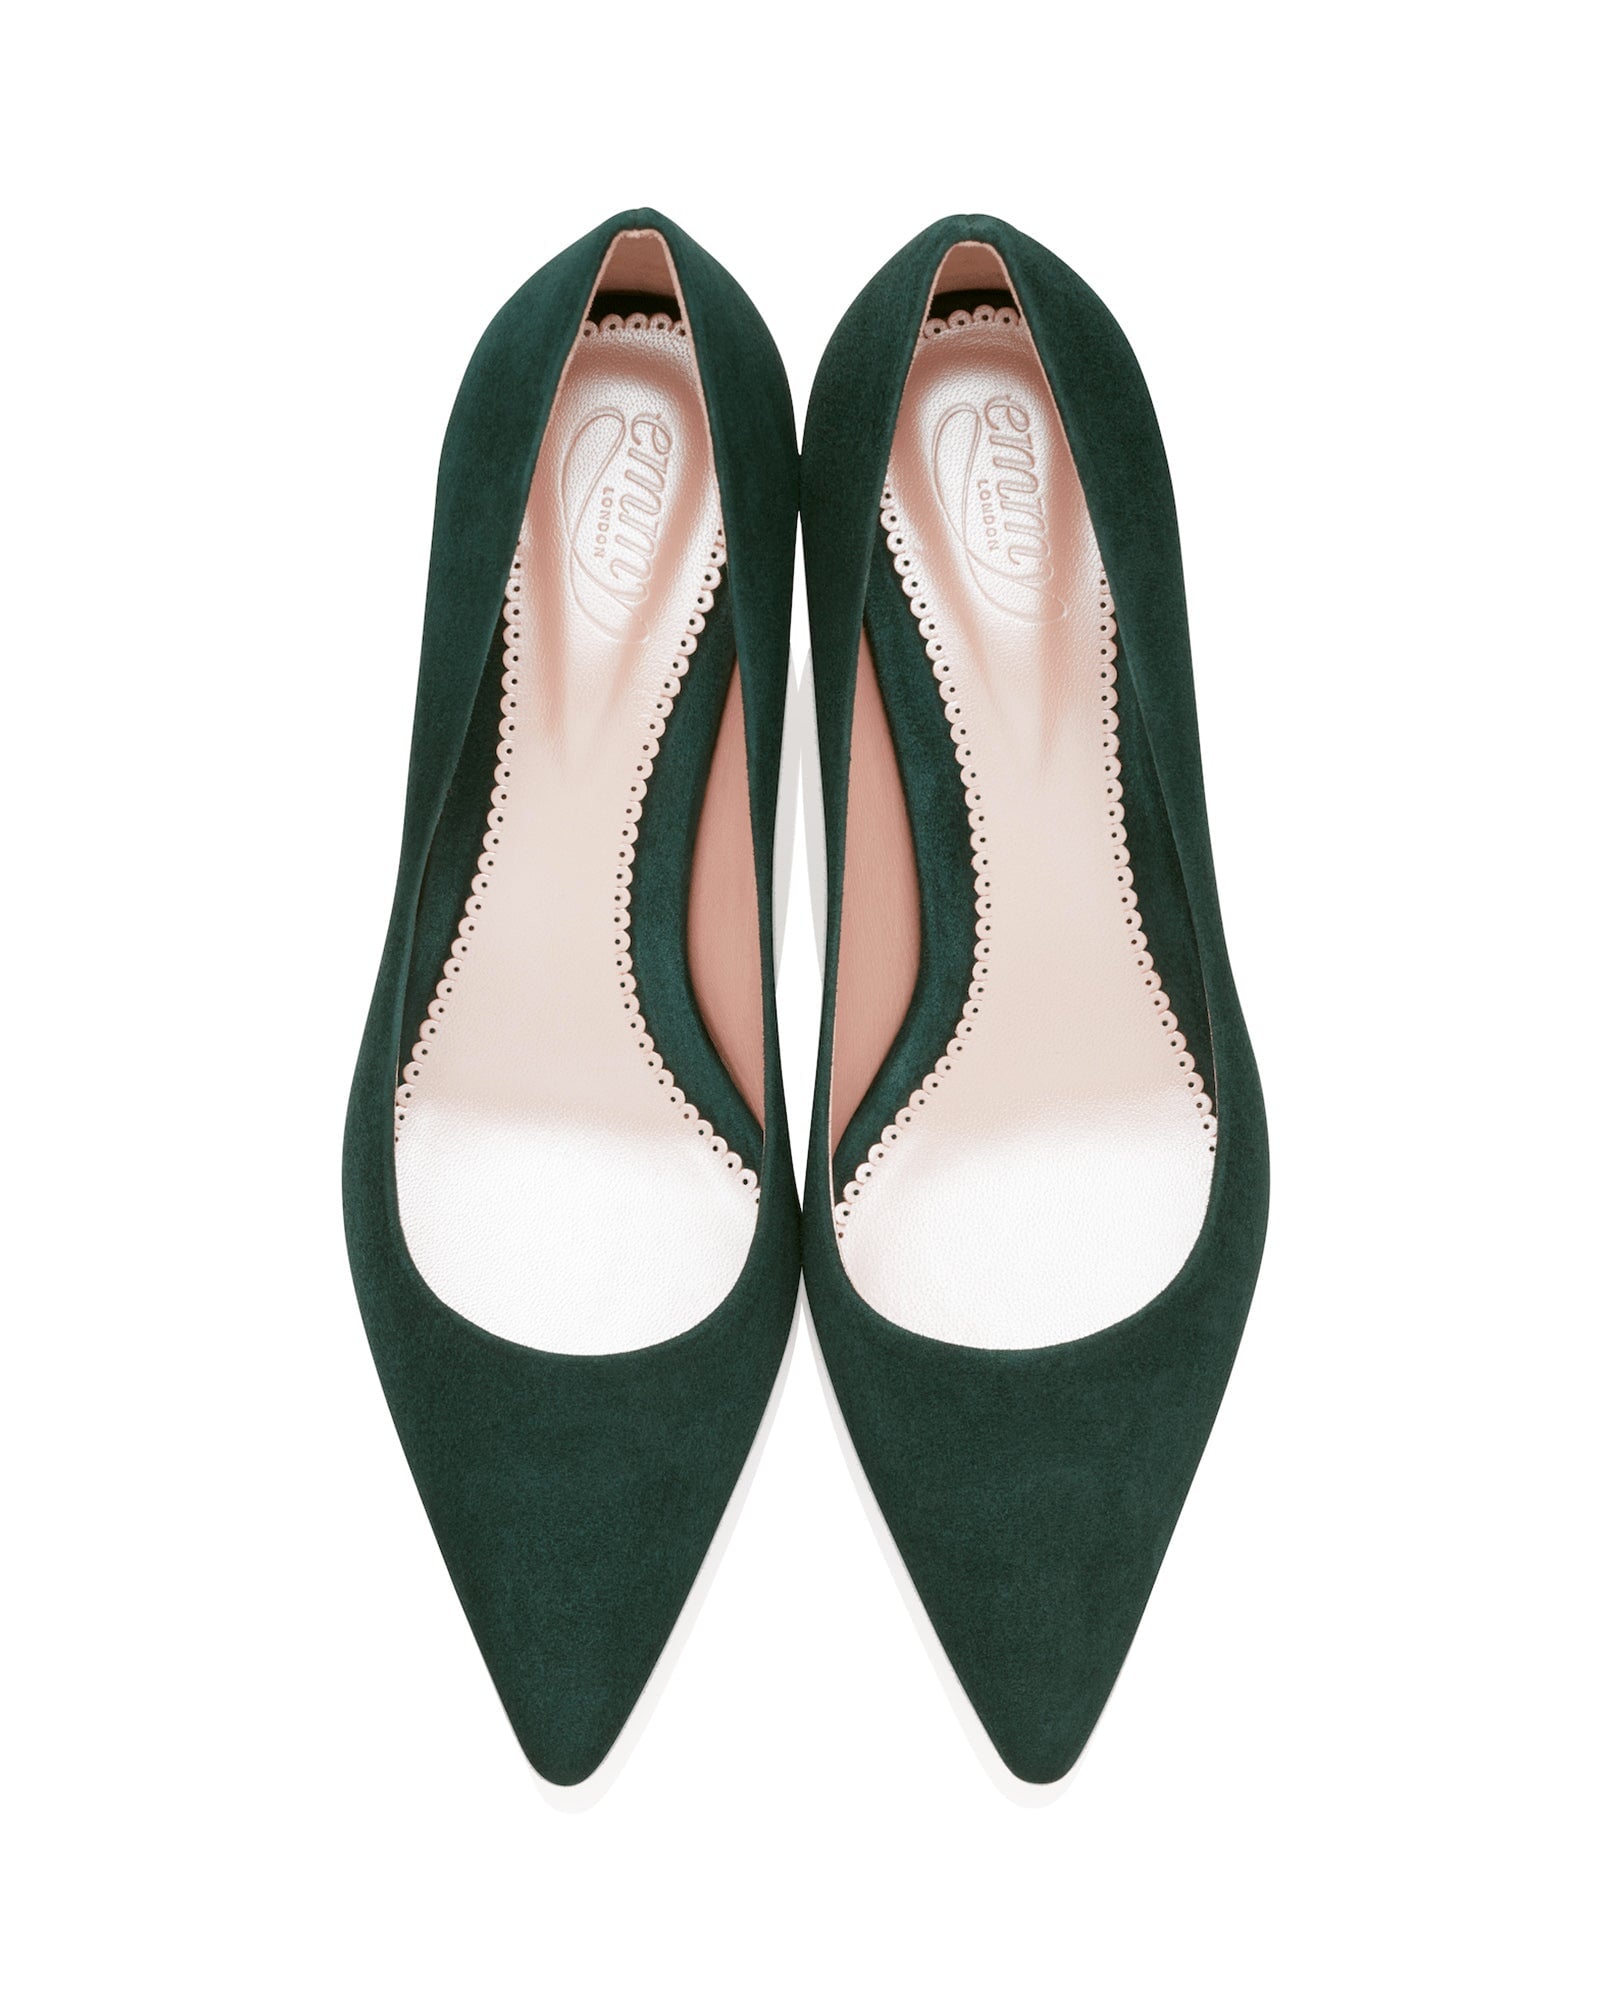 Olivia Kitten Greenery Fashion Shoe Rich Green Suede Court Shoe  image